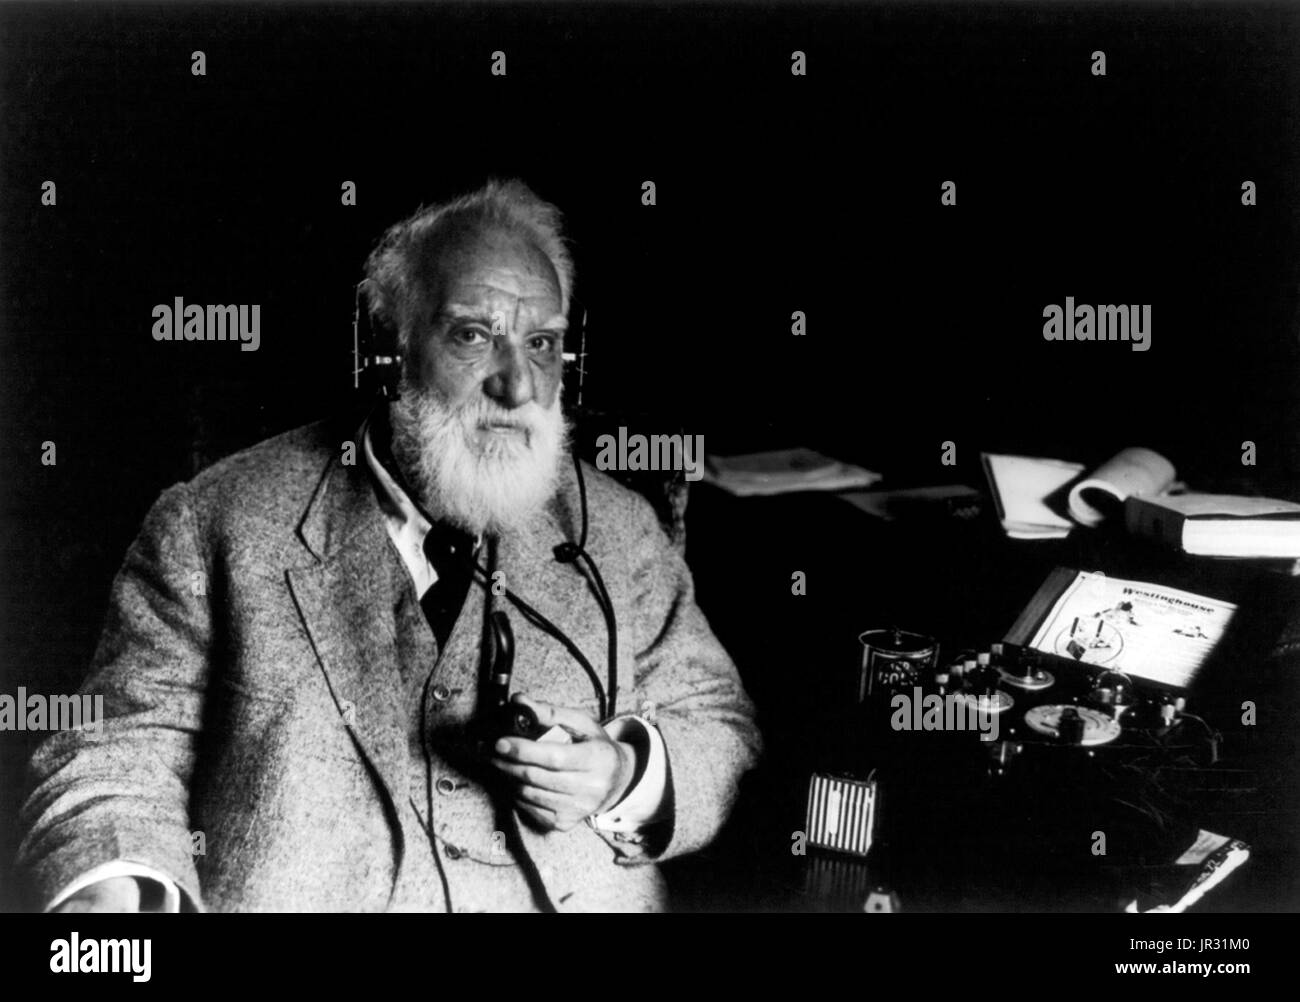 Hombre sosteniendo una campana Imágenes de stock en blanco y negro - Alamy